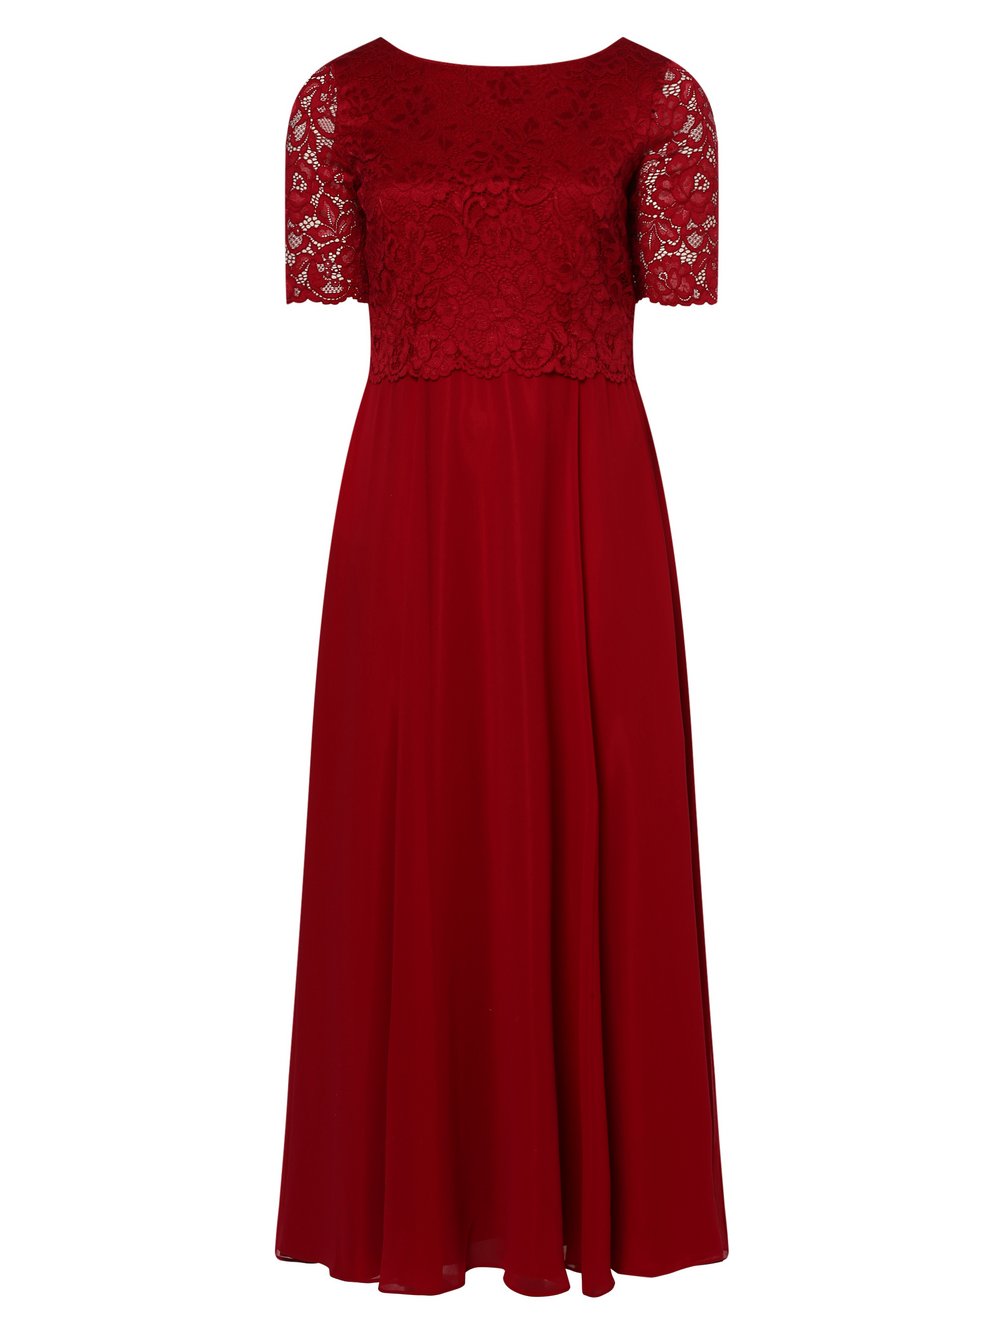 Vera Mont - Damska sukienka wieczorowa – duże rozmiary, czerwony